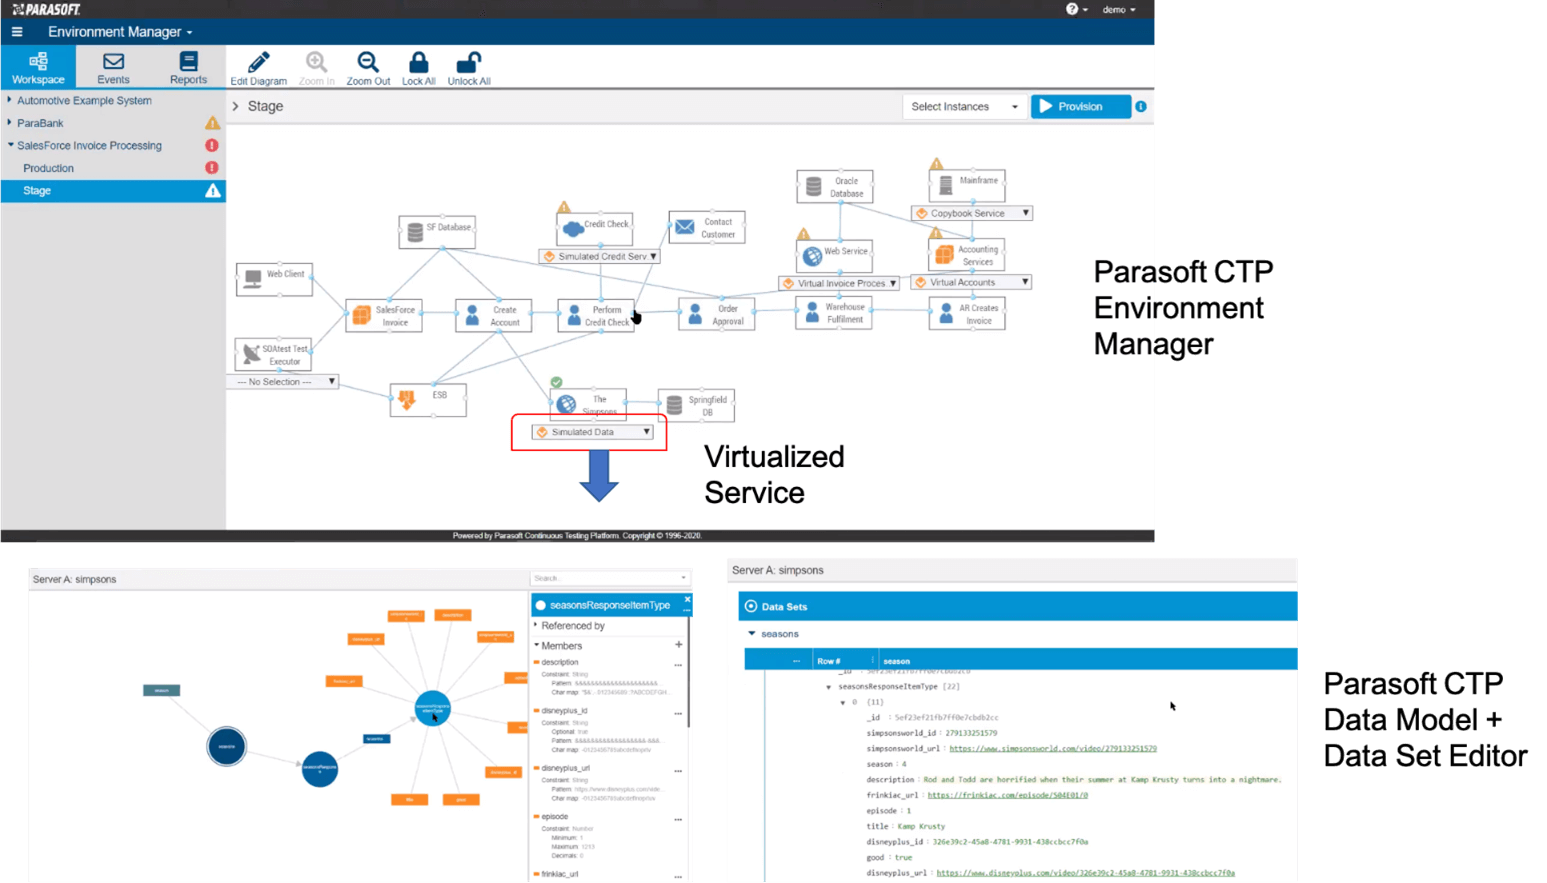 Capture d'écran de Parasoft CTP Environment Manager montrant un modèle de données pour le service virtualisé et pointant vers le bas vers deux autres captures d'écran: Parasoft CTP Data model + Data Set Editor.